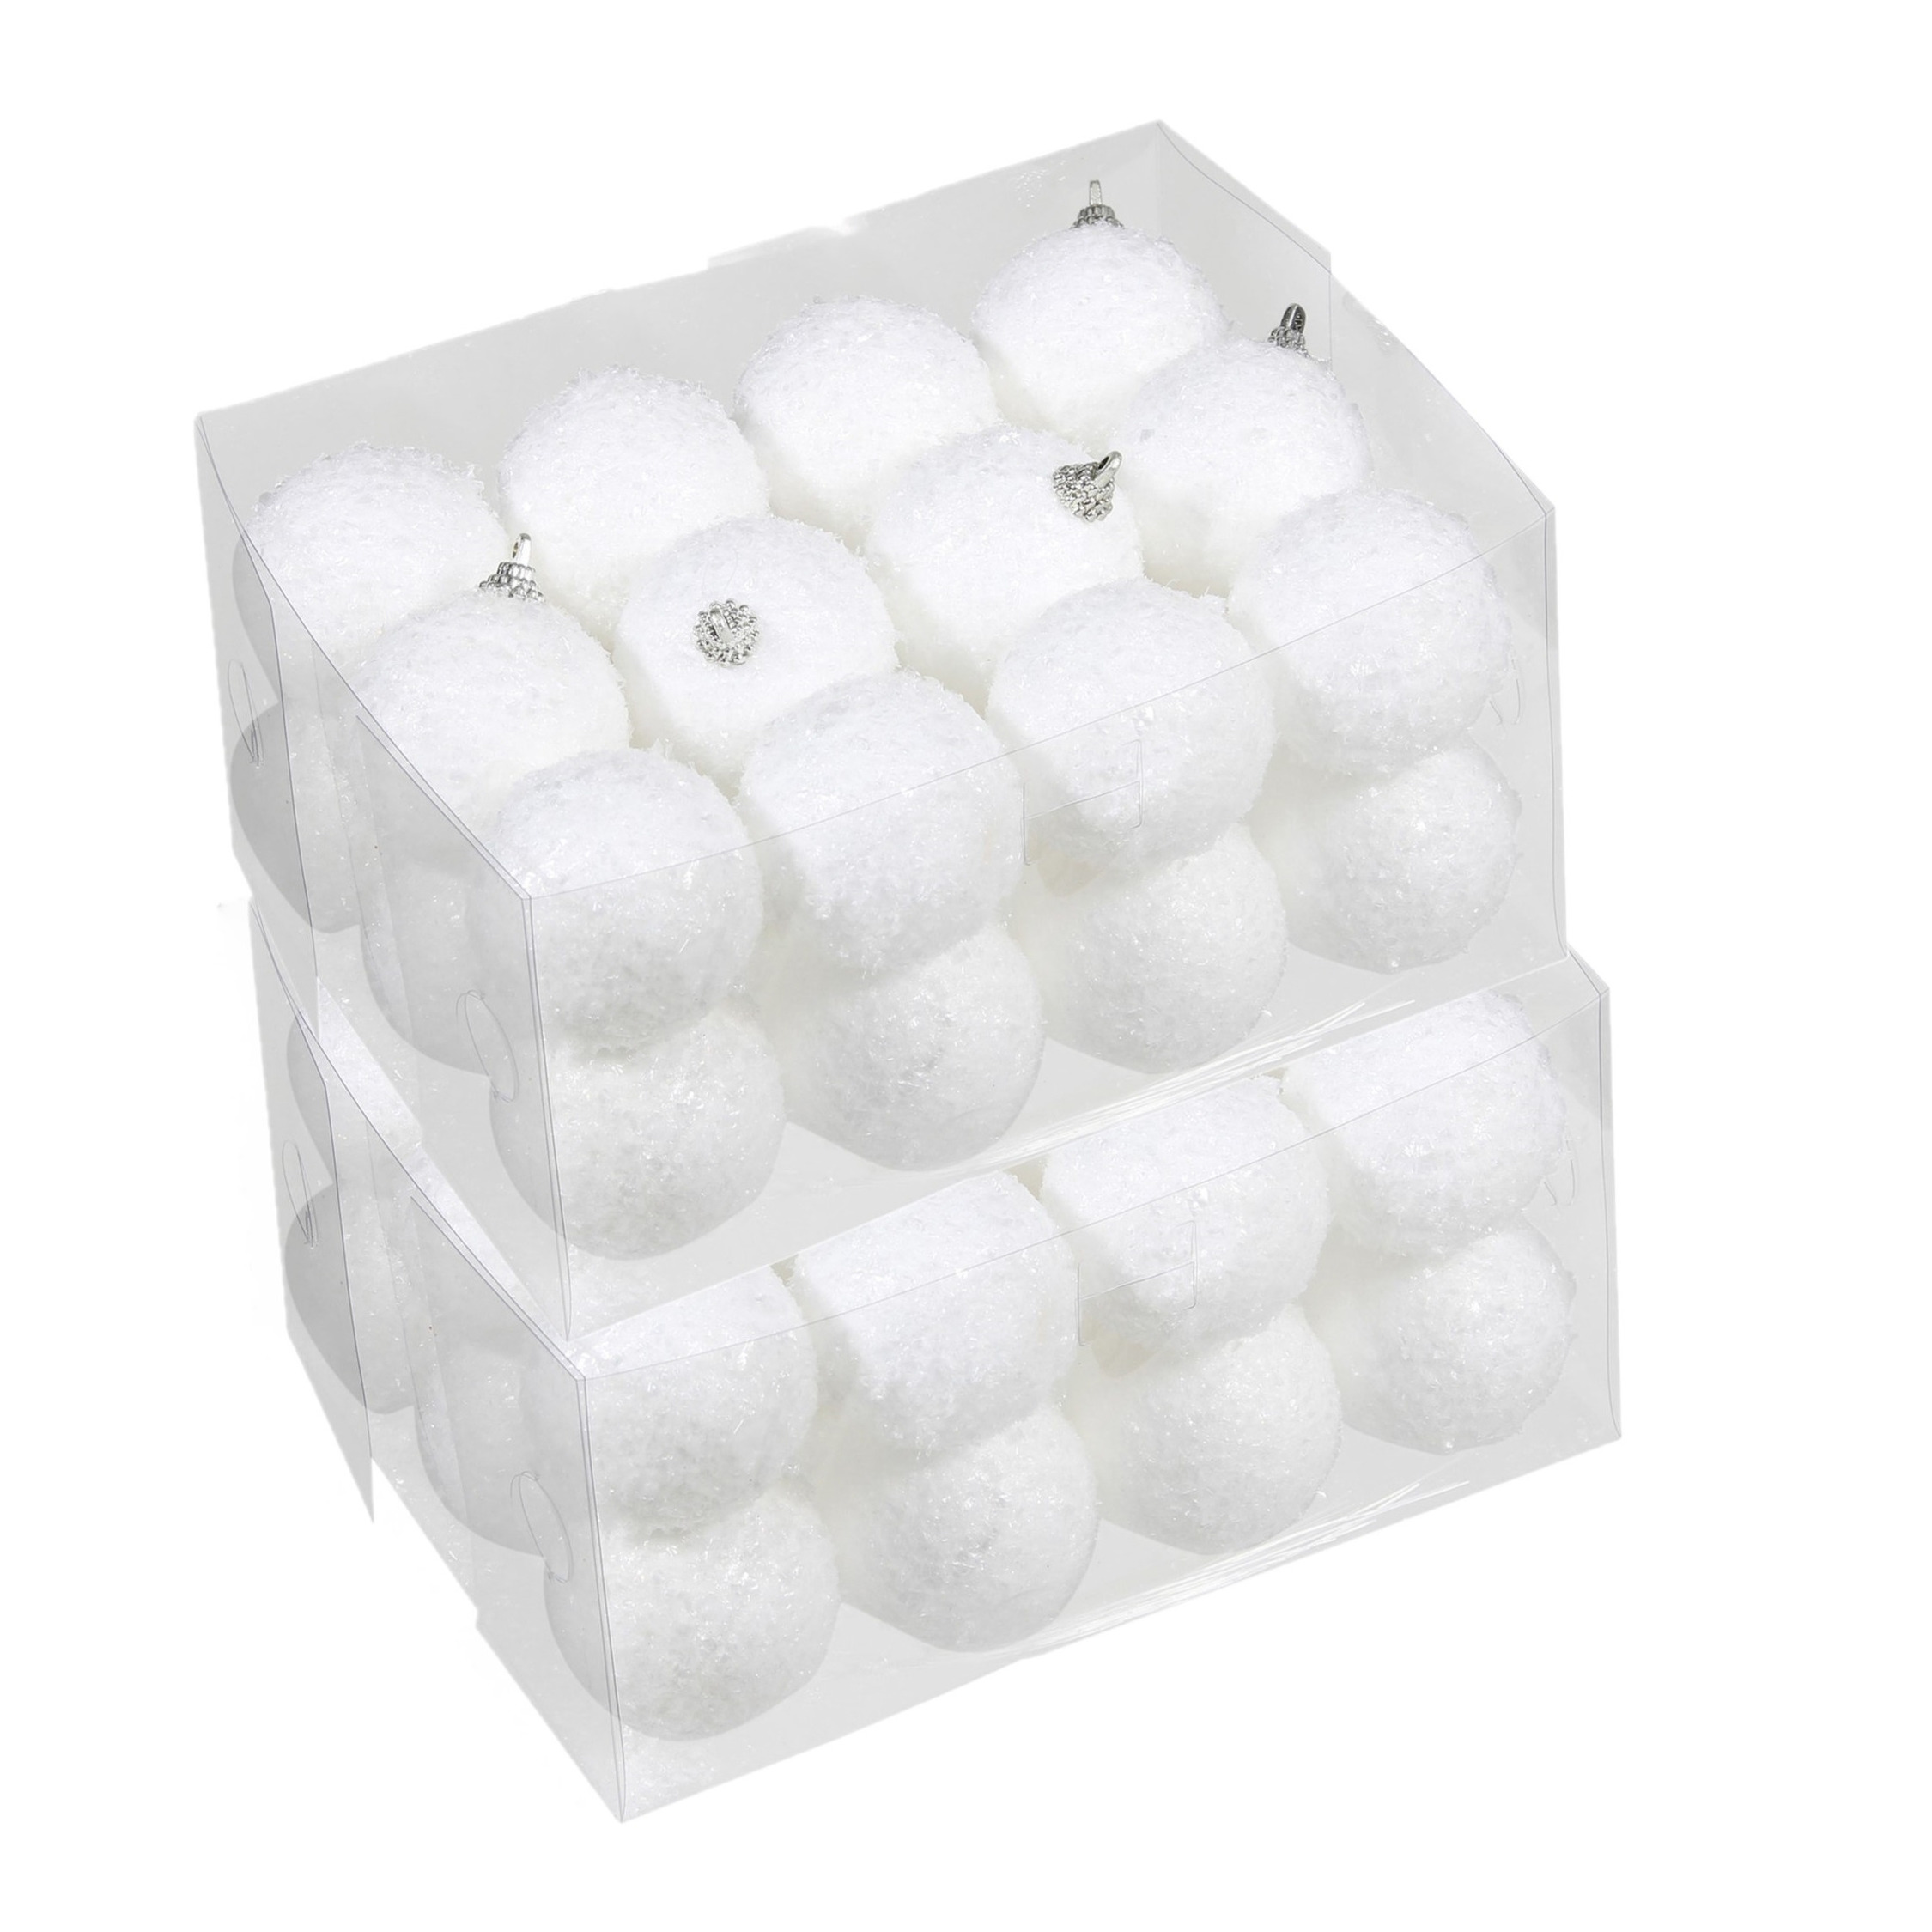 48x Kleine kunststof kerstballen met sneeuw effect wit 5 cm